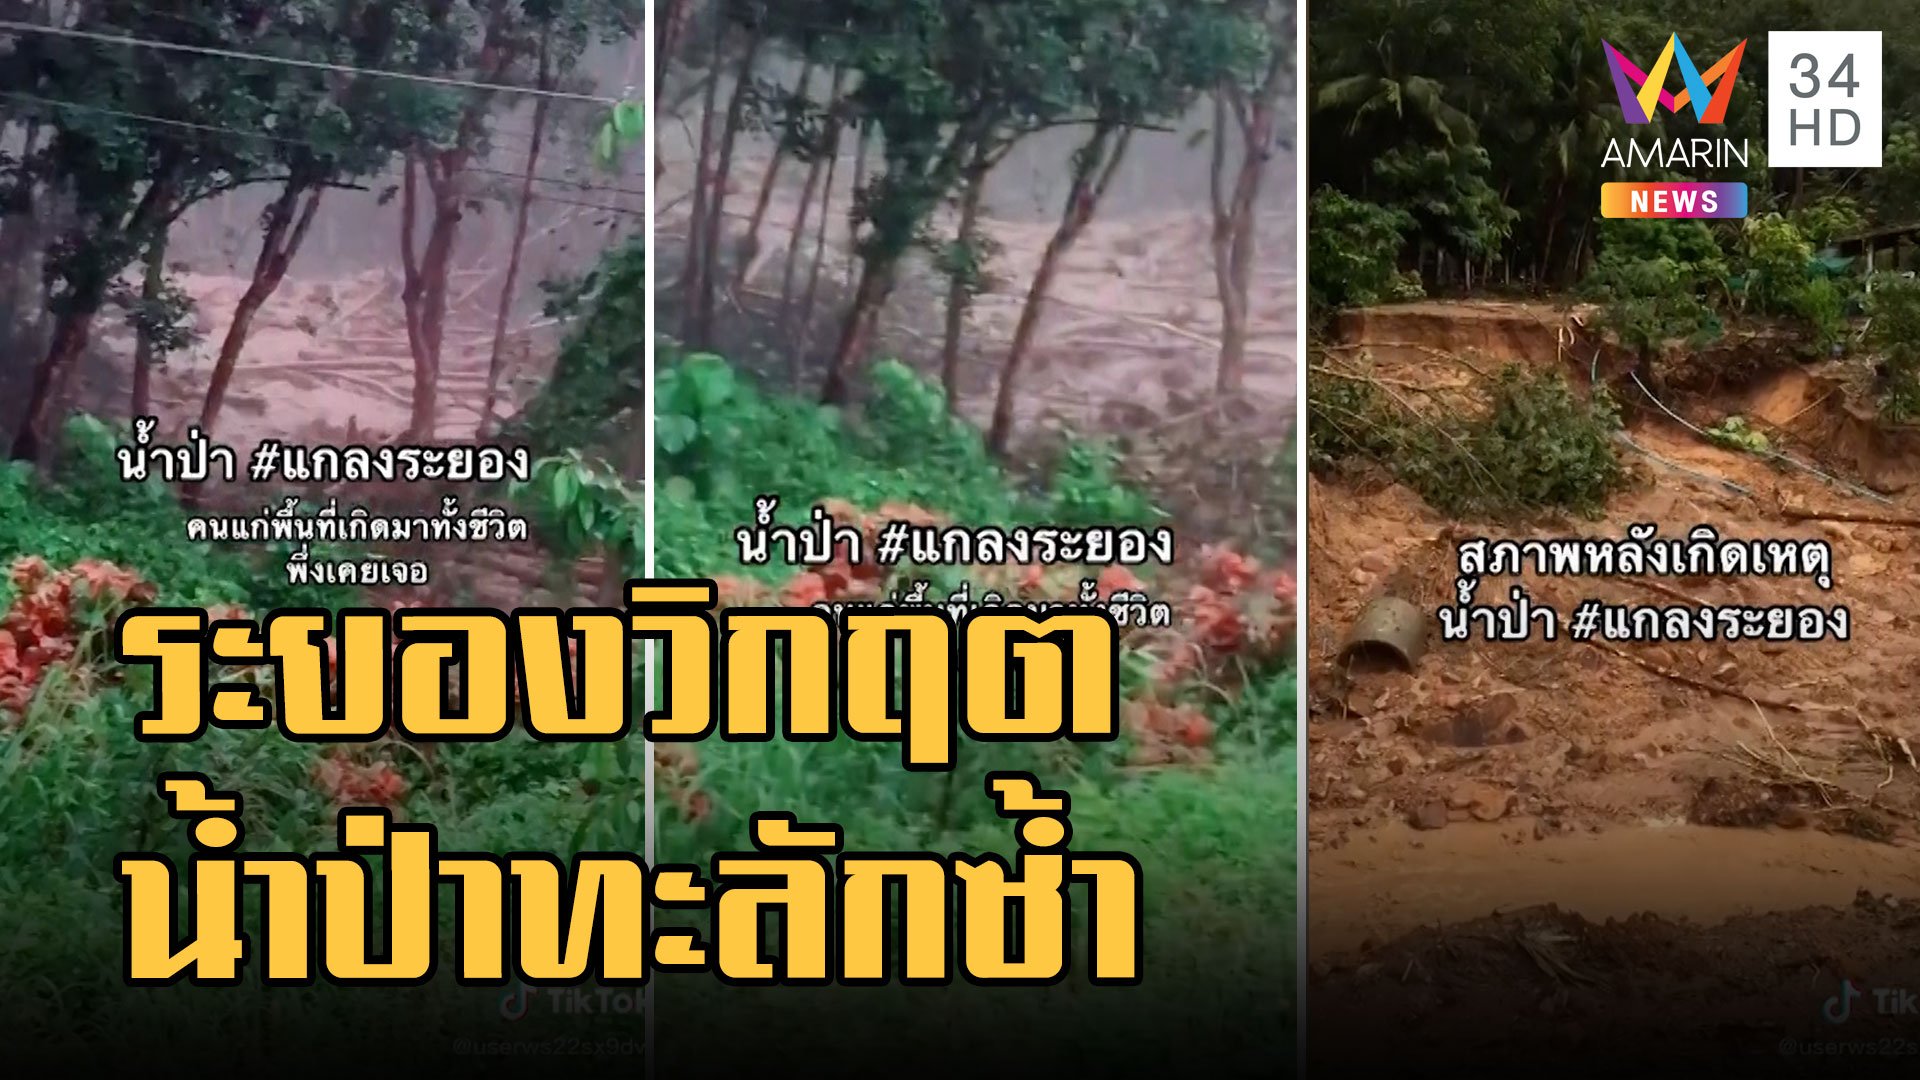 น้ำท่วมระยองวิกฤต น้ำป่าทะลักชาวบ้านหนีตาย คนแก่เกิดมาไม่เคยเจอ | ข่าวเที่ยงอมรินทร์ | 9 ก.ย. 65 | AMARIN TVHD34